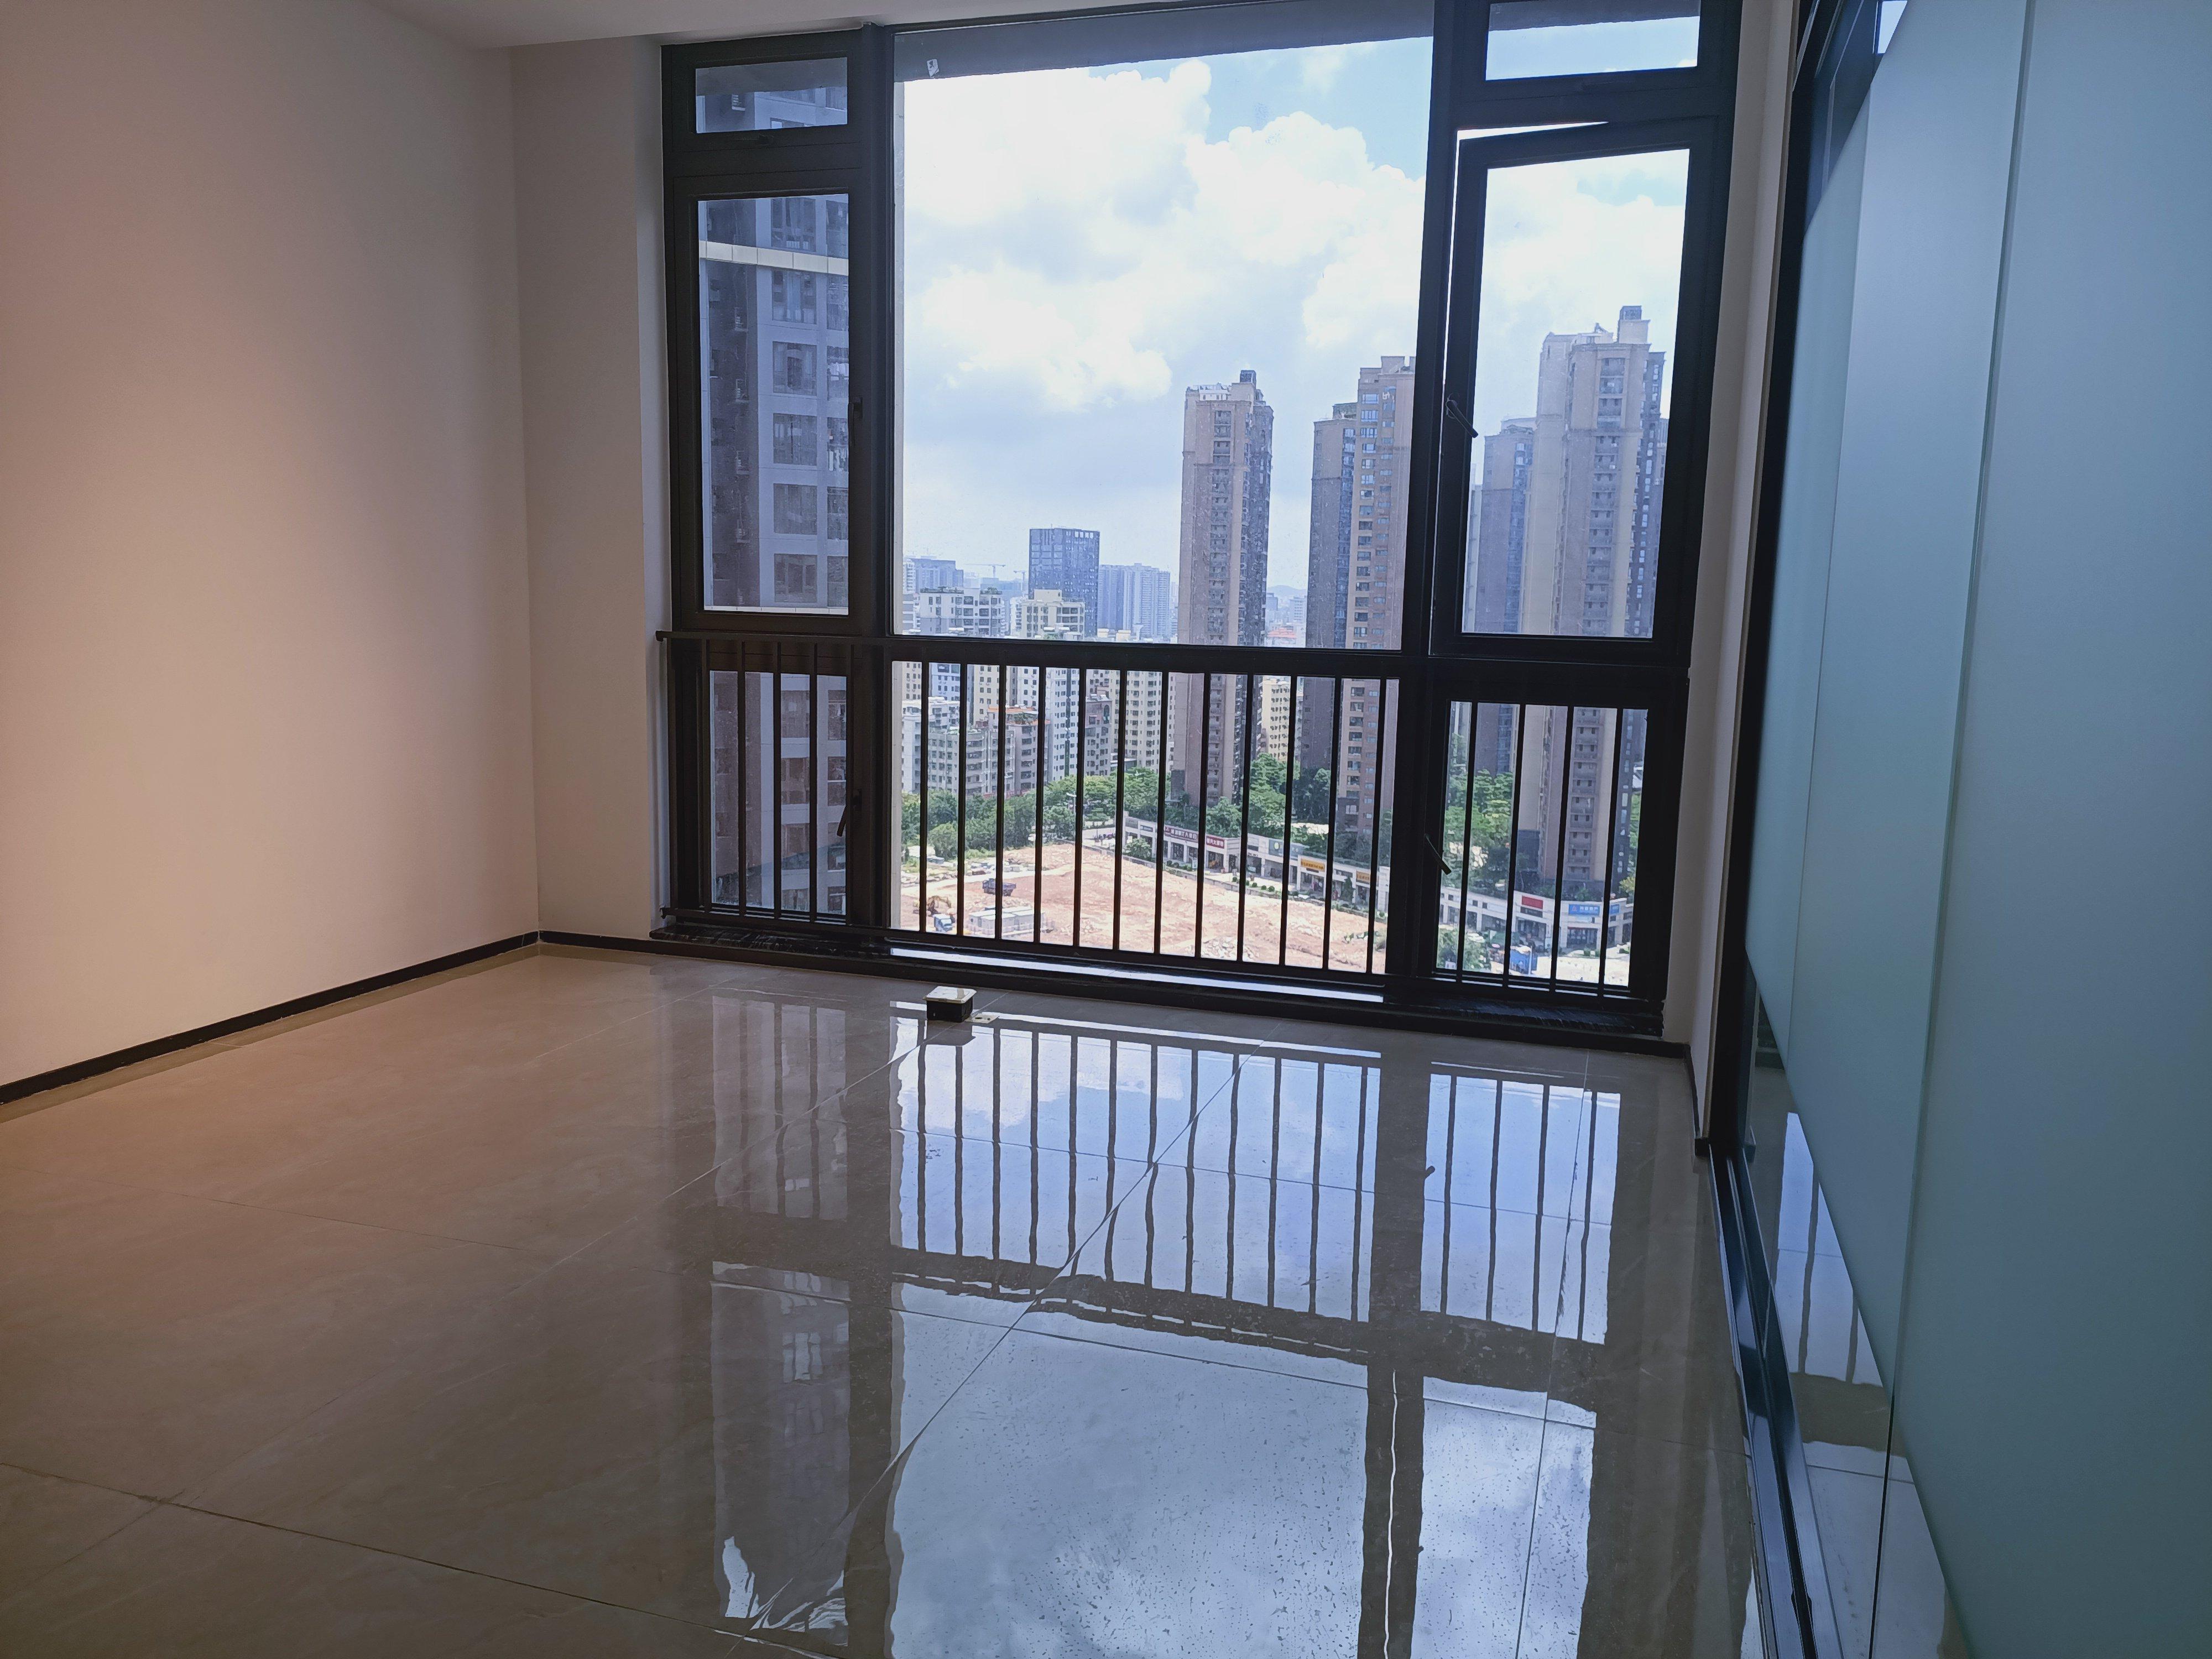 深圳北站附近新出212平精装办公室招租，户型方正彩光充足